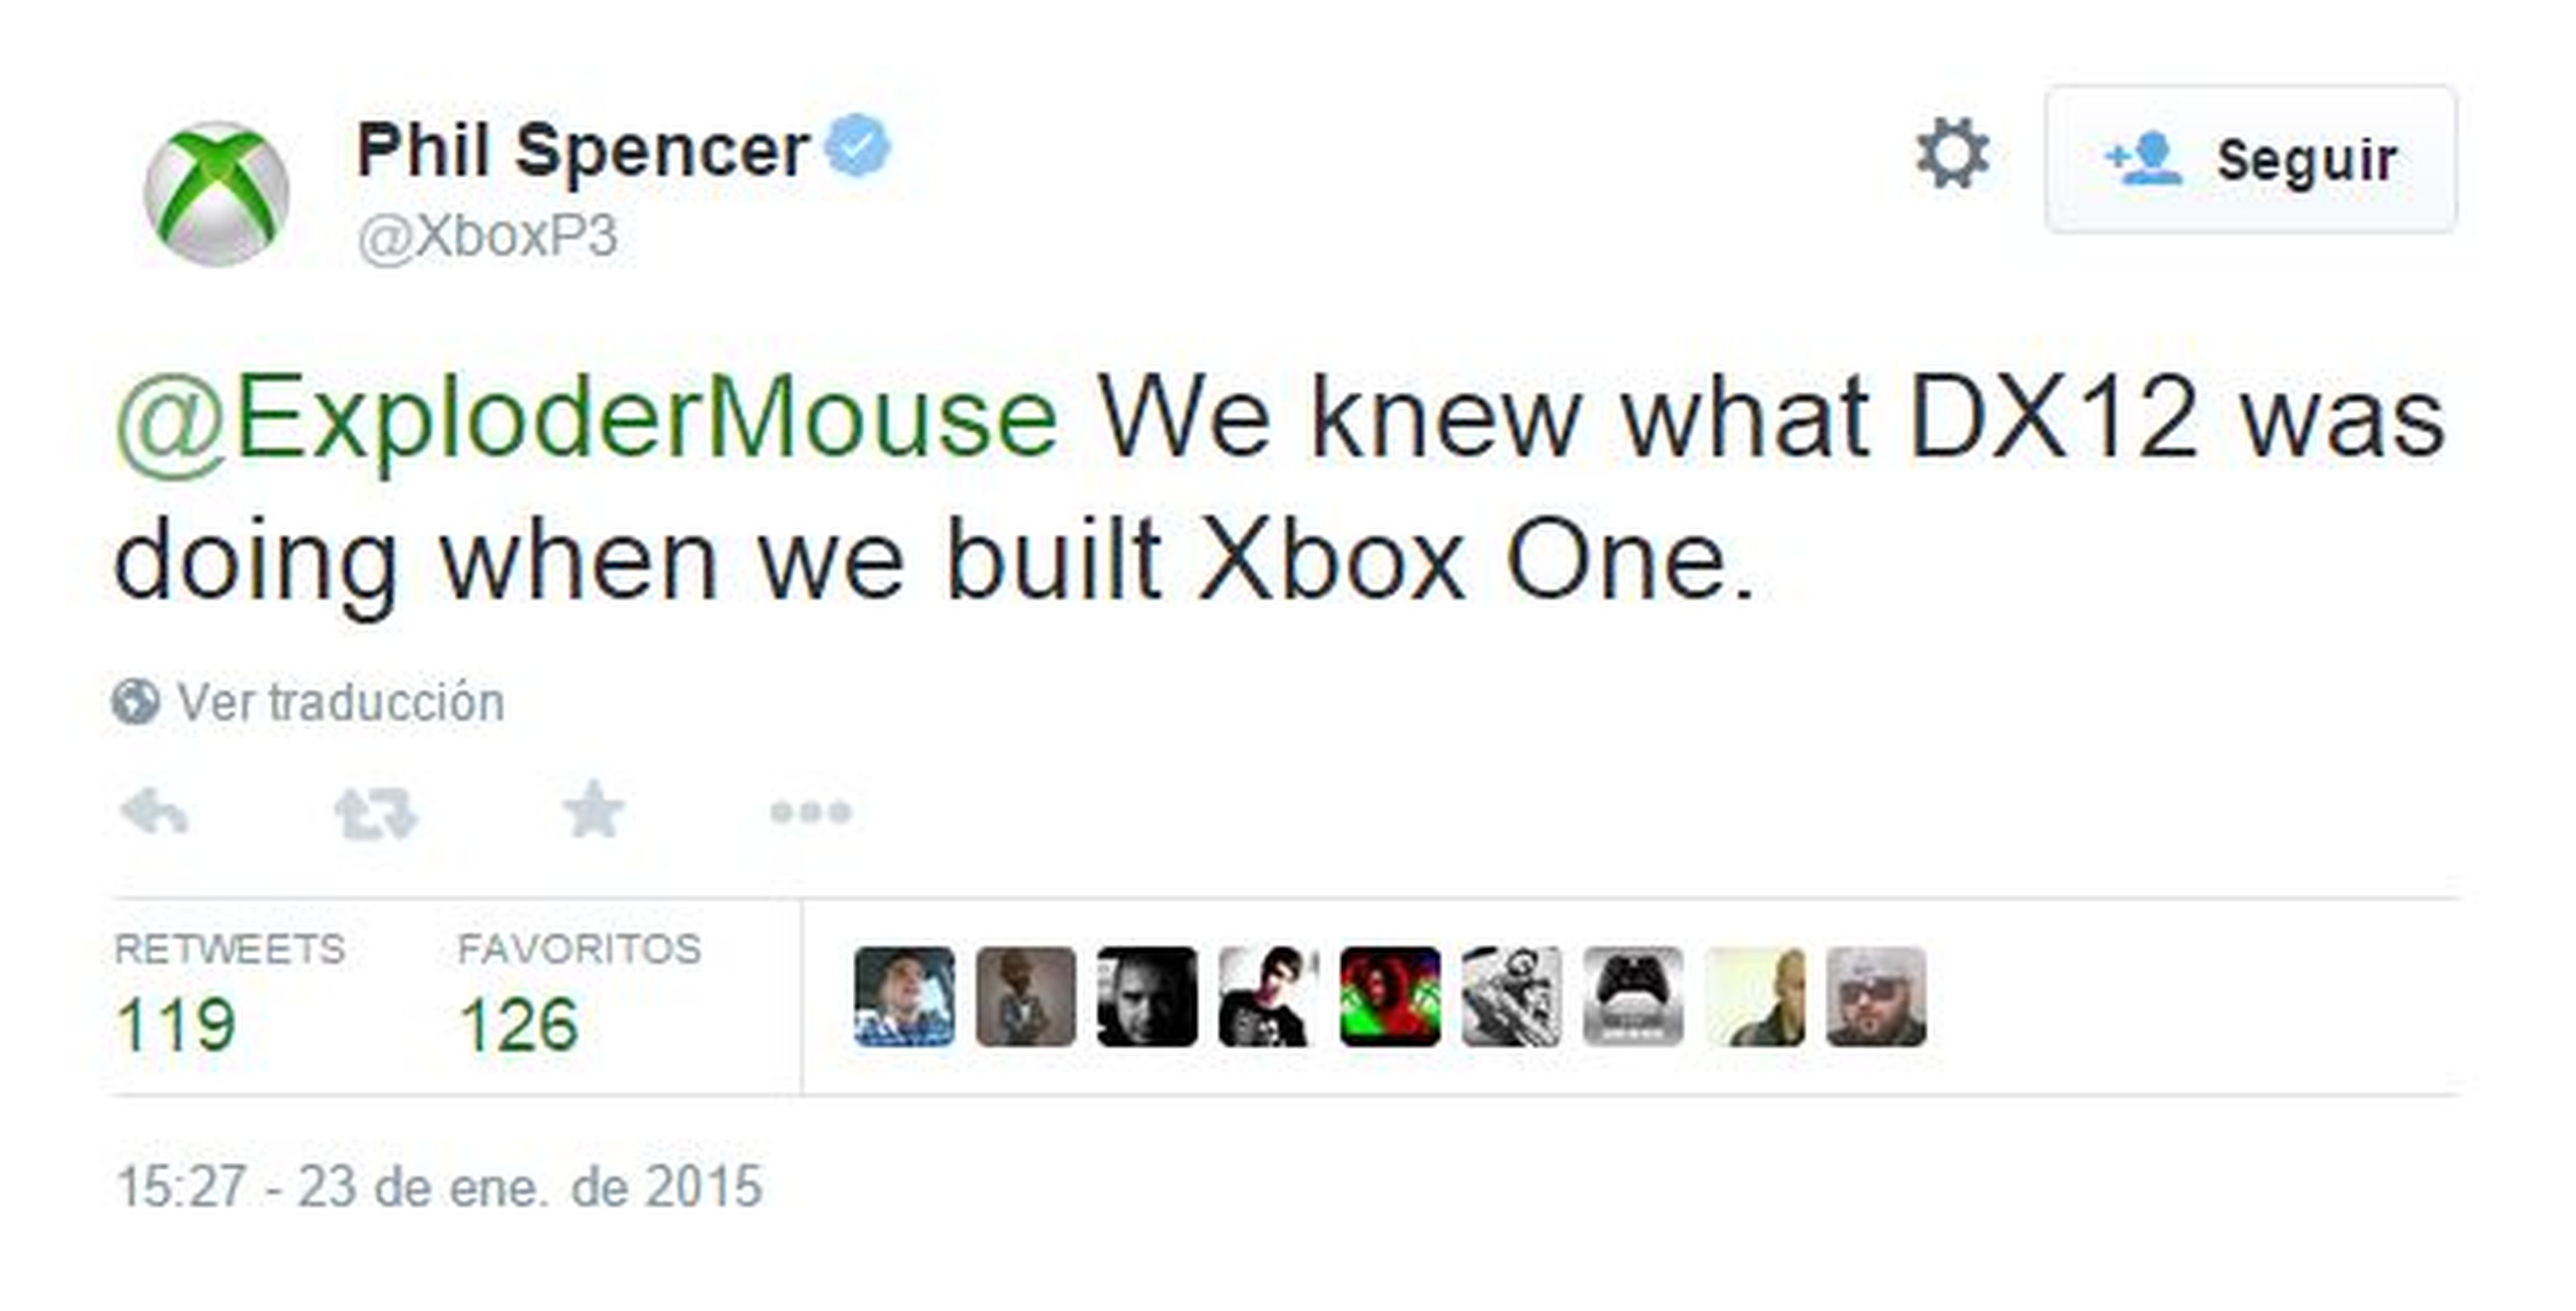 Durante el desarrollo de Xbox One ya se conocía la existencia de DirectX 12